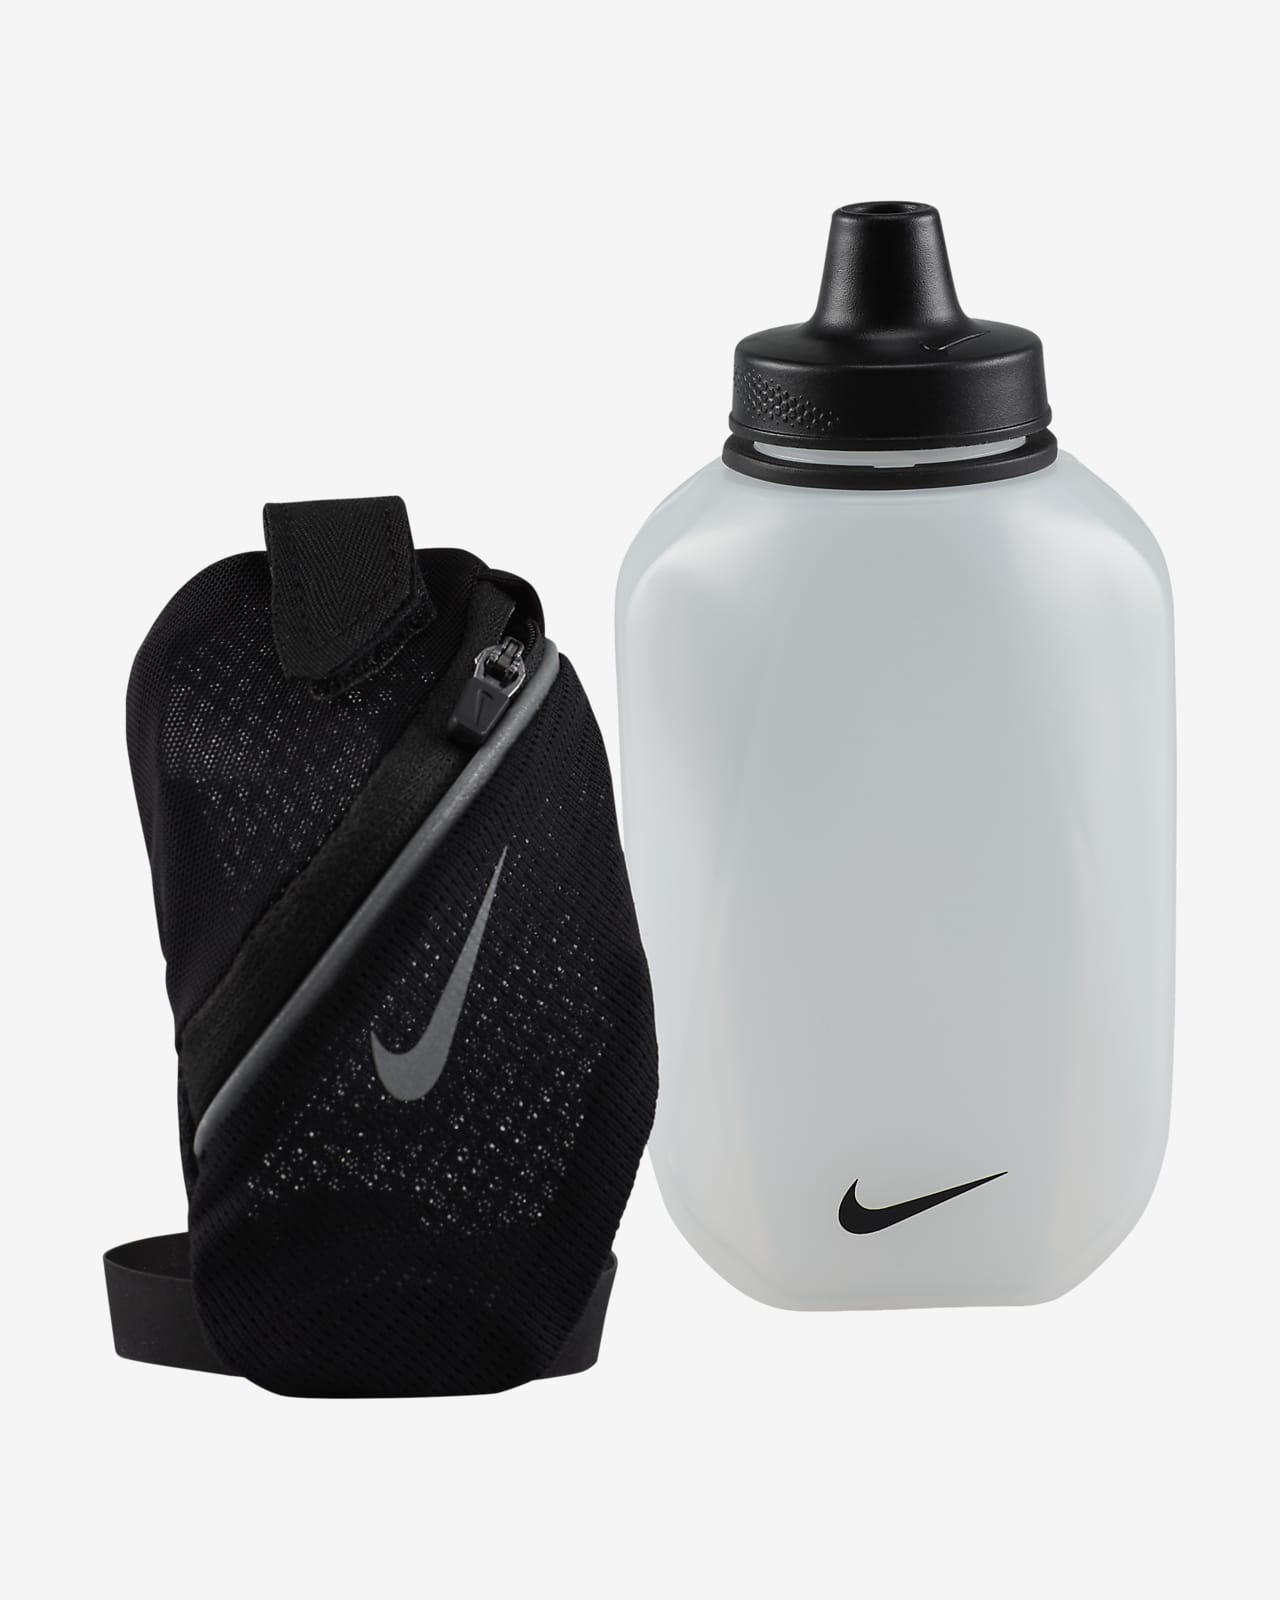 Botella de de mano Nike Stride de 355 ml. Nike.com